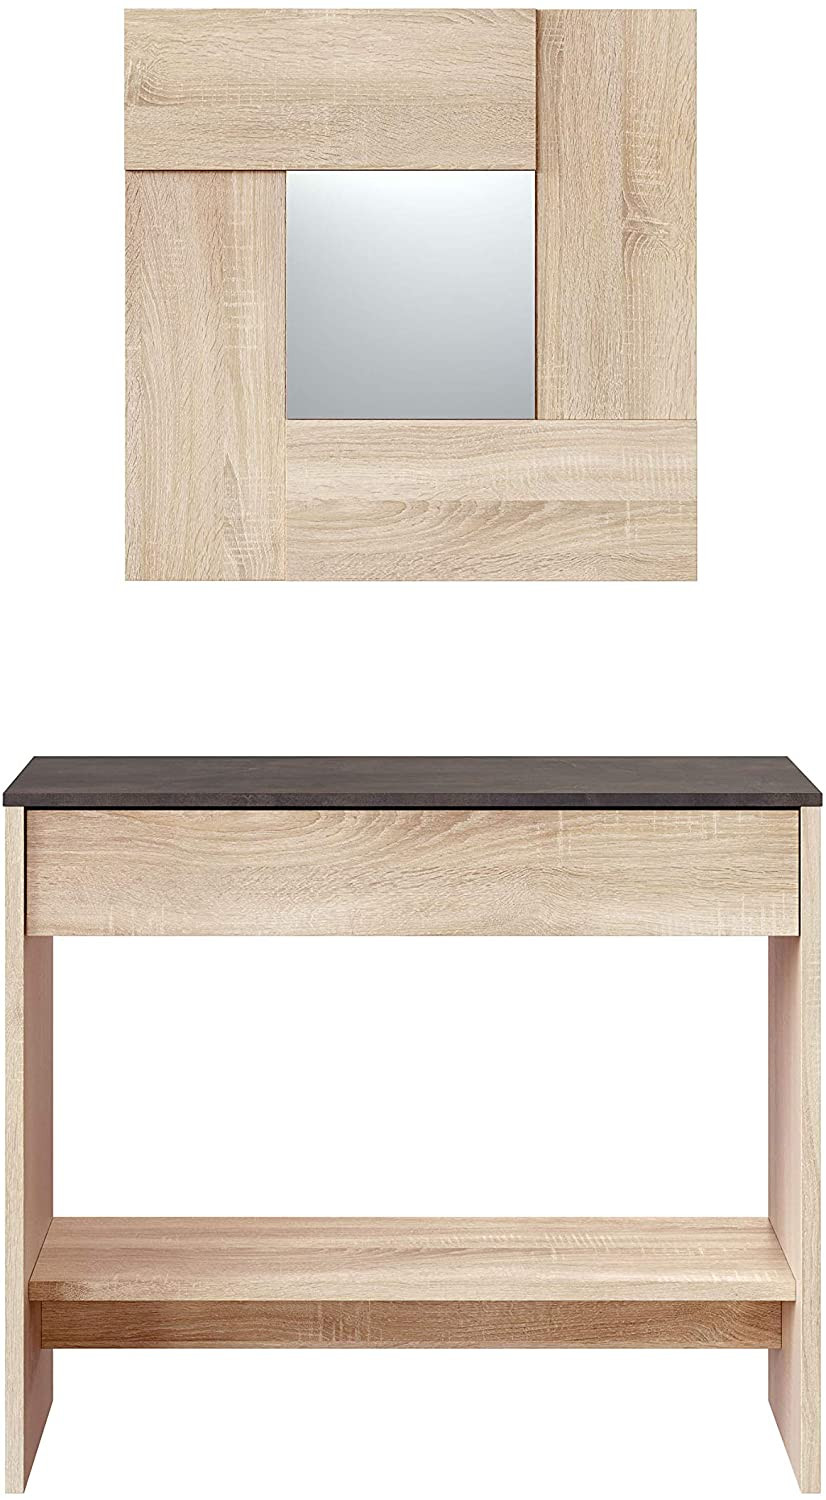 Mueble de entrada de diseño moderno con espejo a juego DS263-3020 - Dstilo